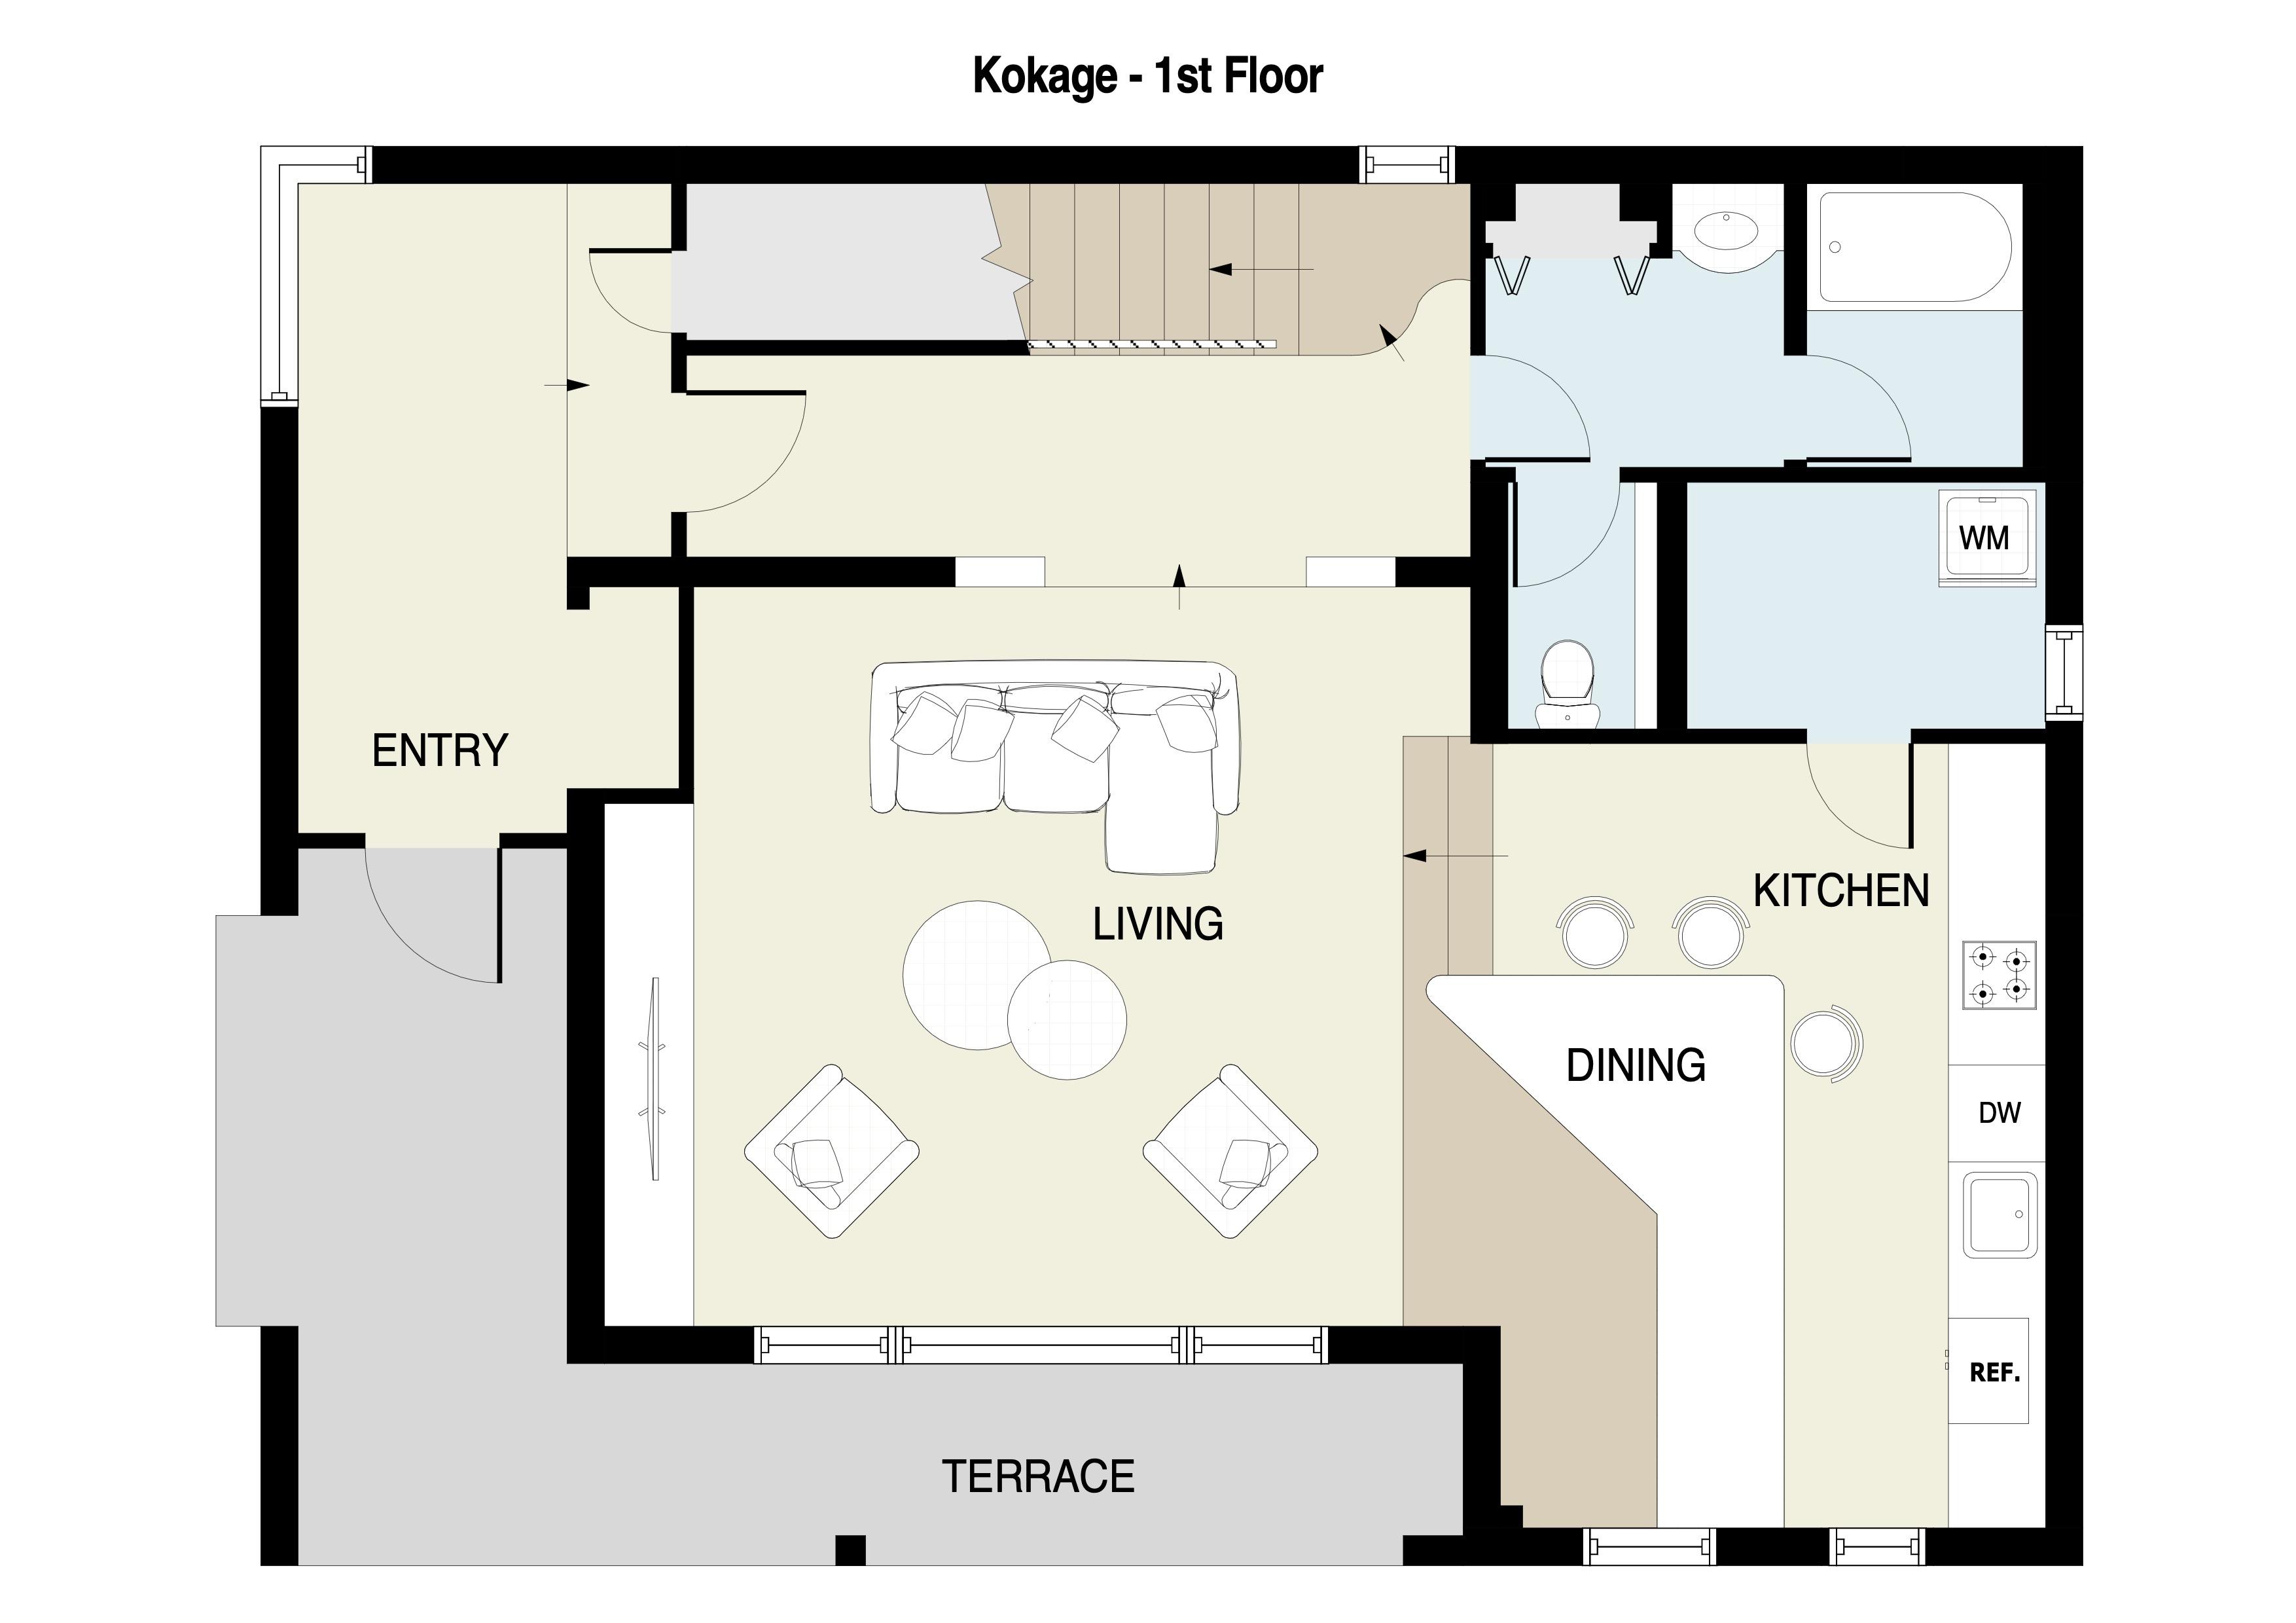 Kokage 1st floor plan